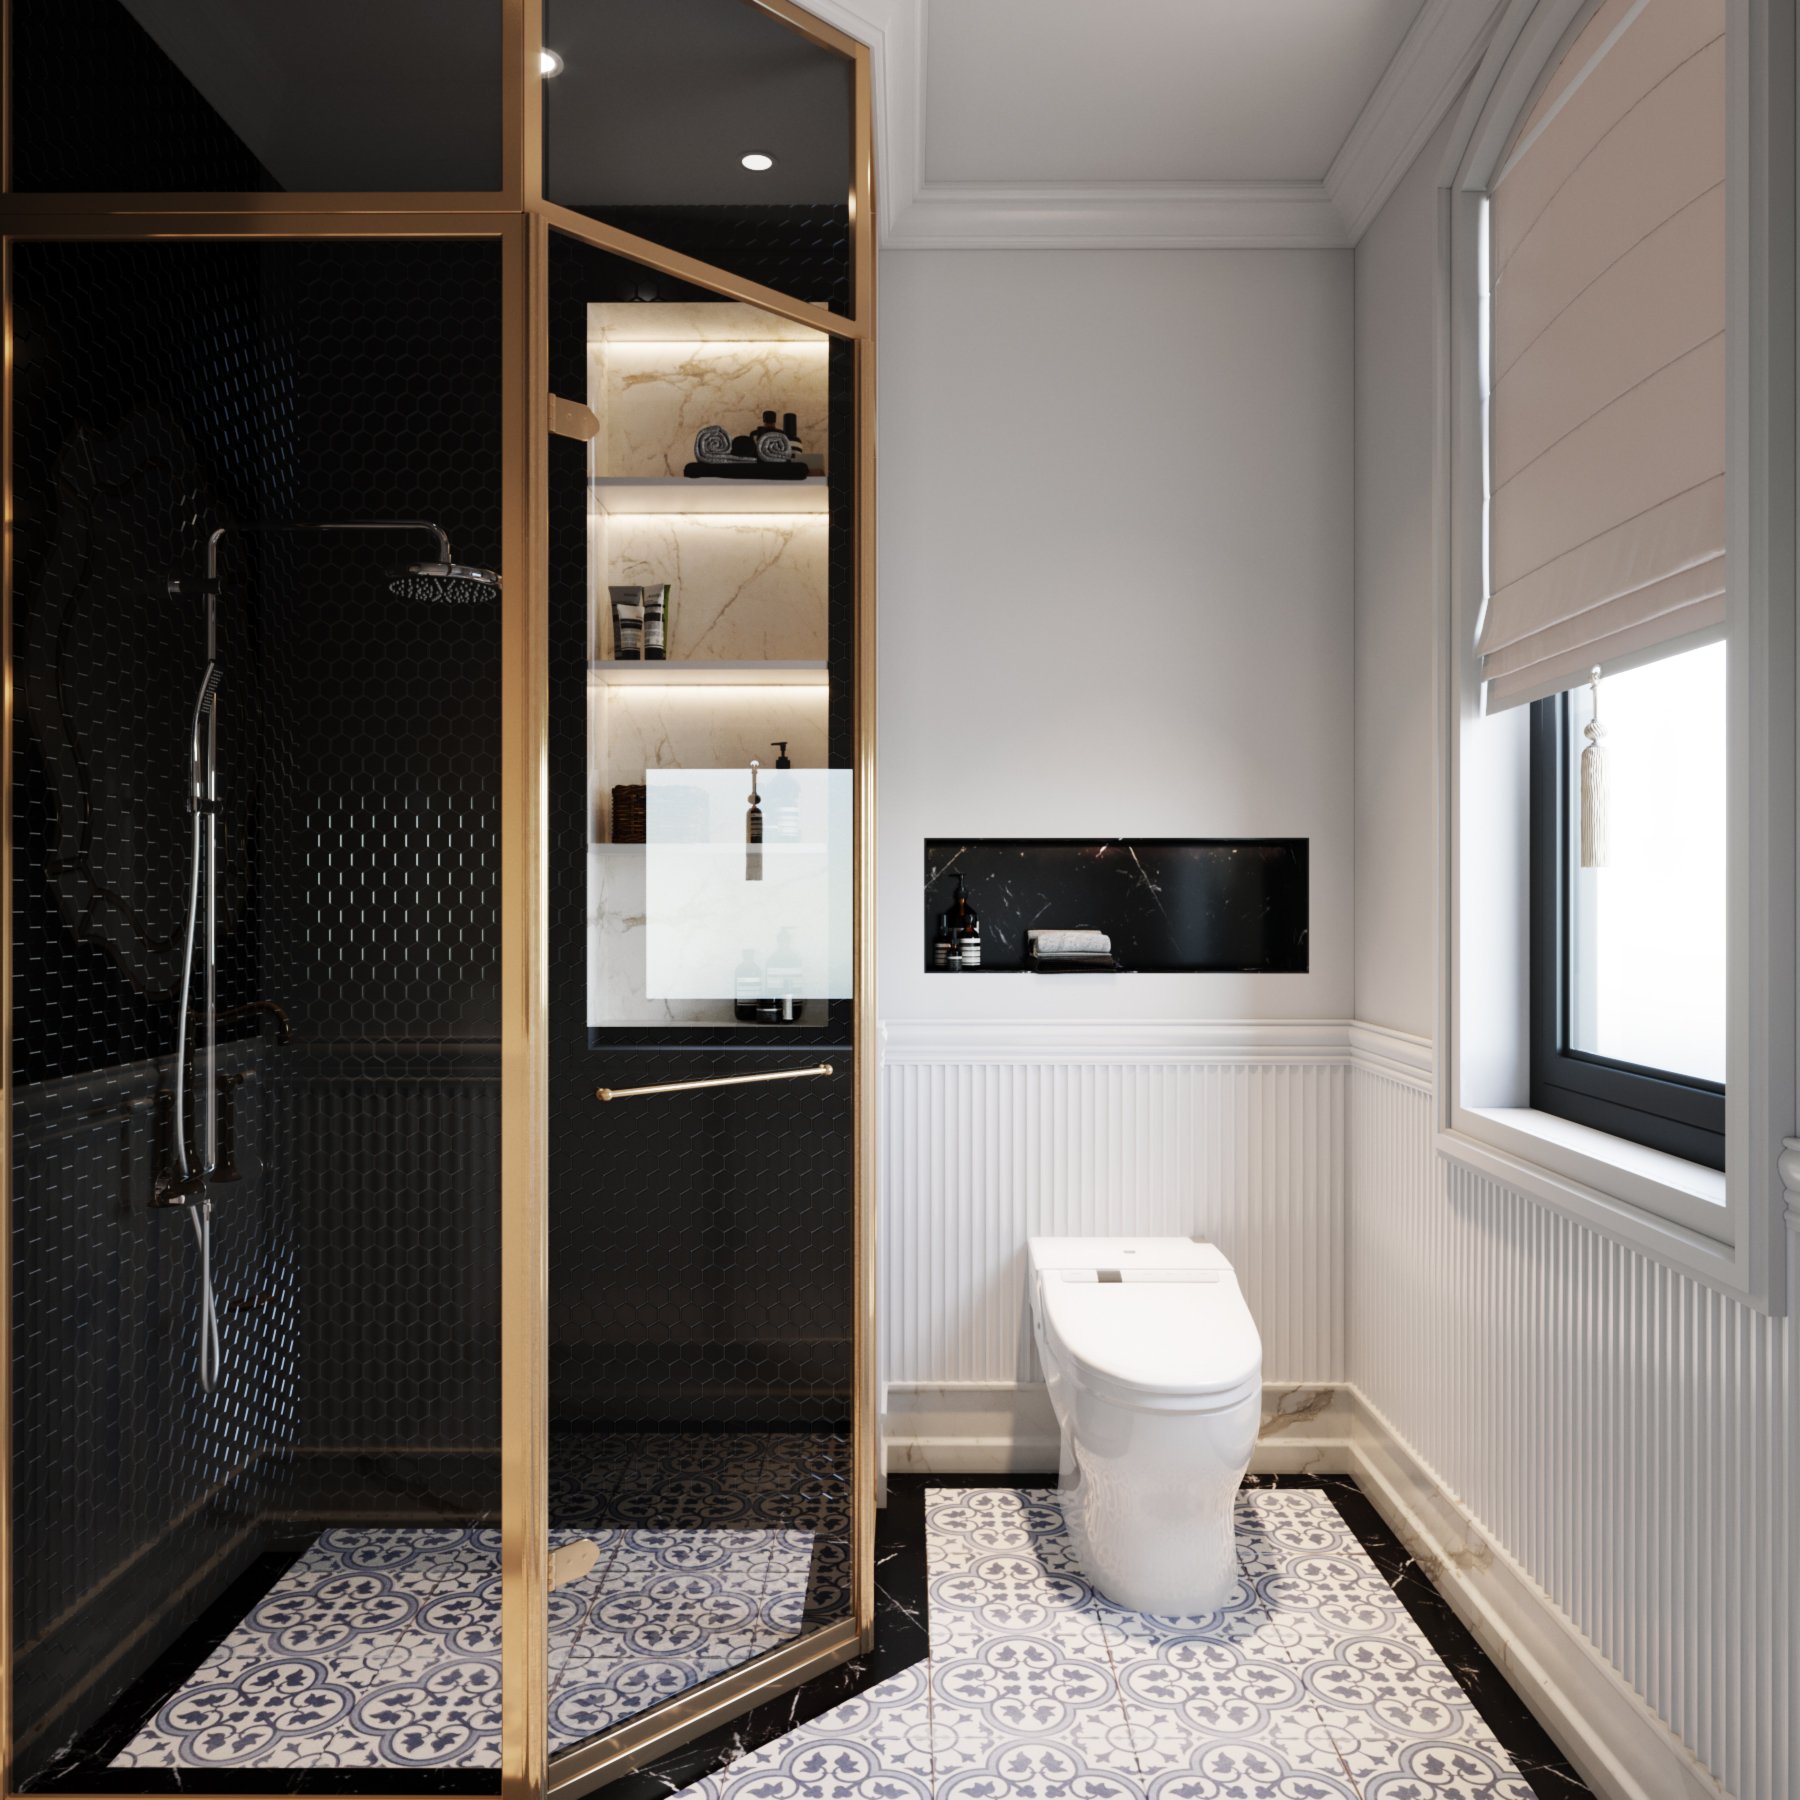 Phòng tắm, phong cách tân cổ điển Neo Classic, thiết kế concept nội thất, nhà phố Verosa Park Khang Điền